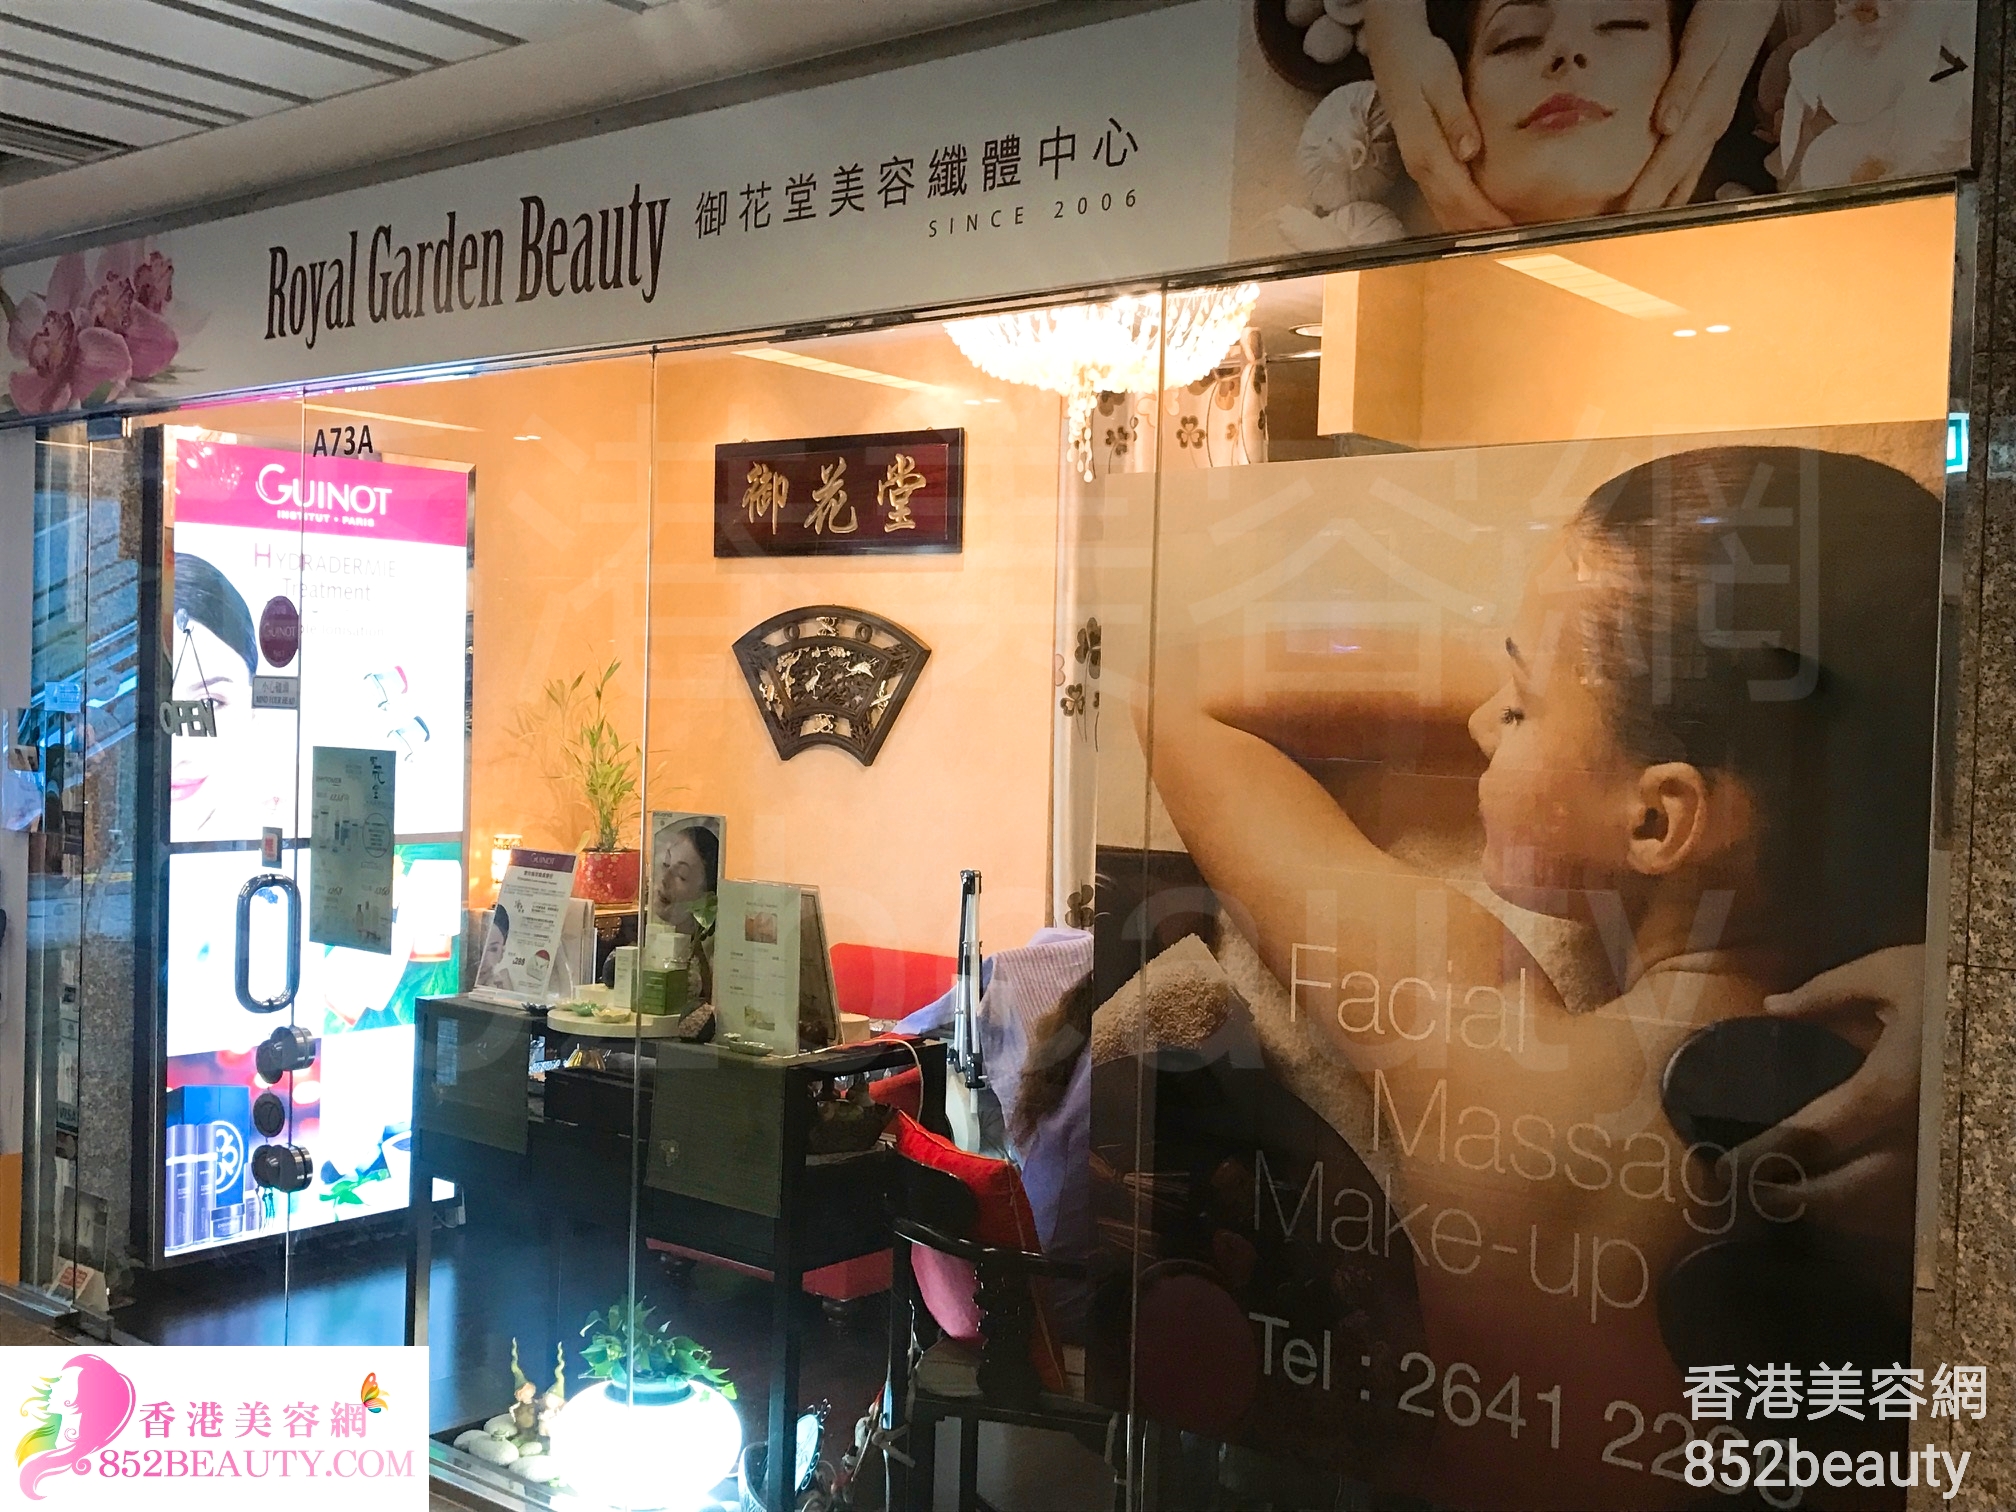 香港美容網 Hong Kong Beauty Salon 美容院 / 美容師: Royal Garden Beauty 御花堂美容纖體中心